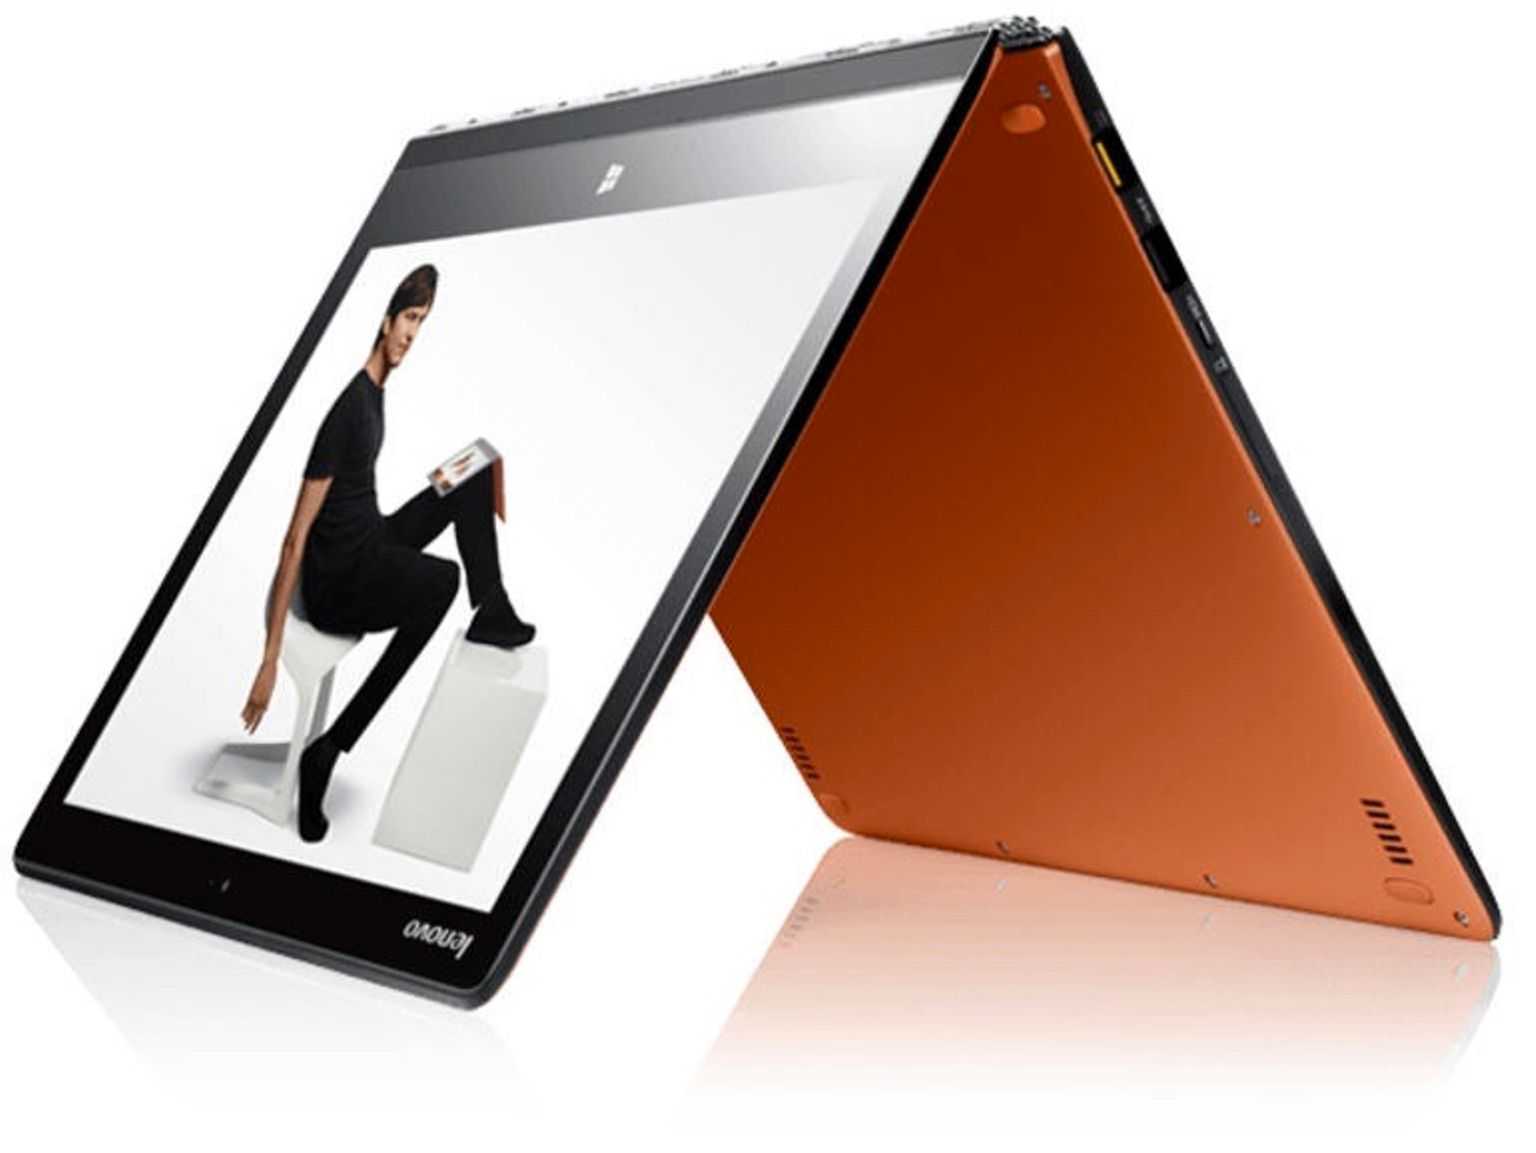 Ноутбук Lenovo Yoga 3 14 (80JH003FUA) White - подробные характеристики обзоры видео фото Цены в интернет-магазинах где можно купить ноутбук Lenovo Yoga 3 14 (80JH003FUA) White